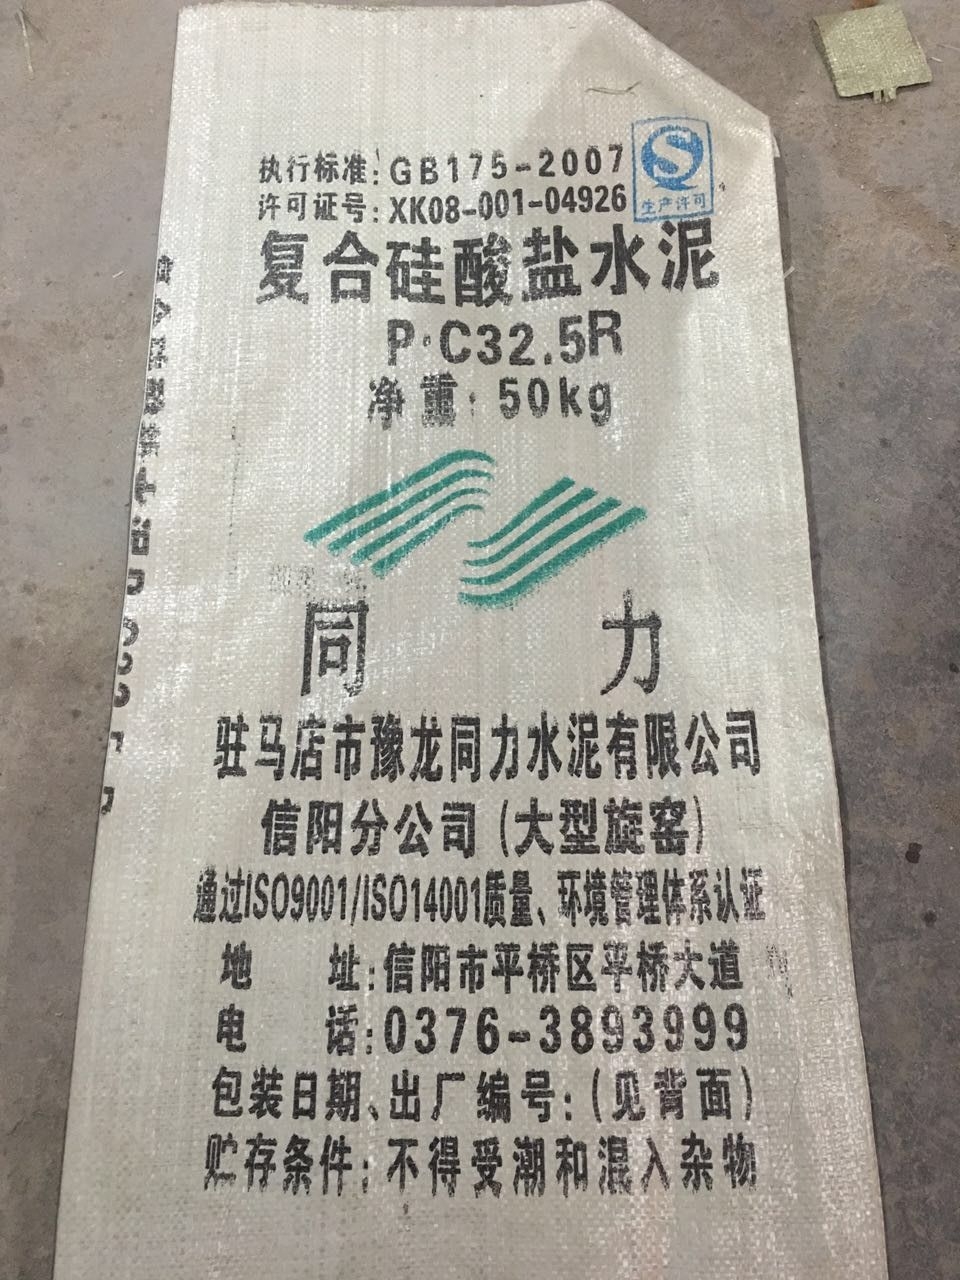 包装袋O.C32.5R